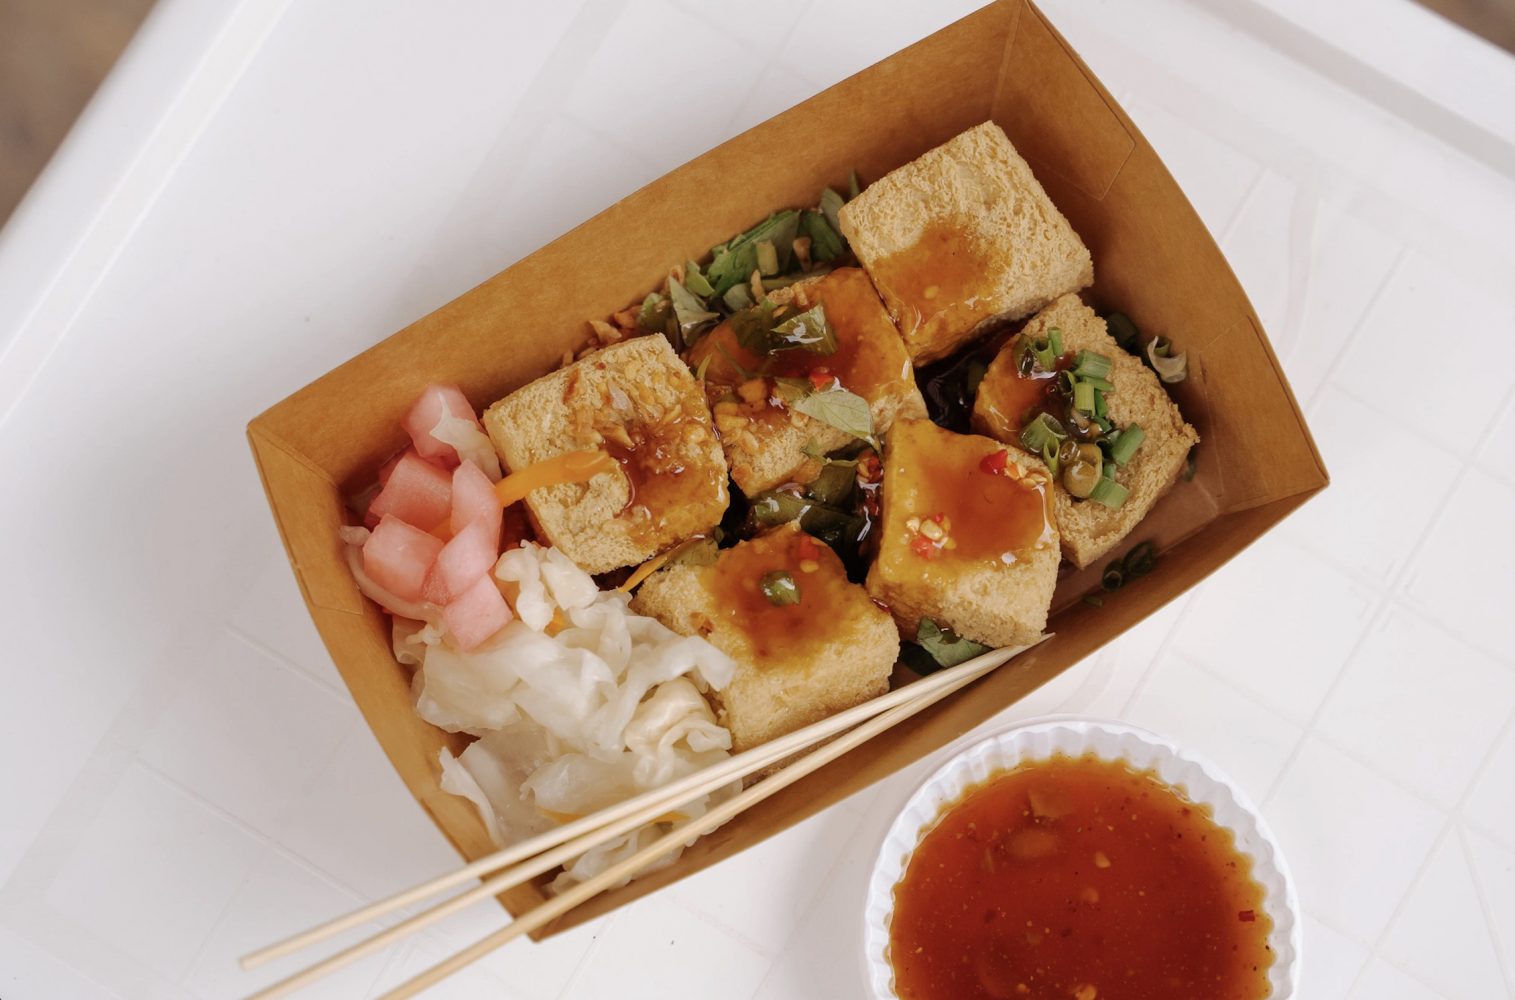 Du lịch Đông Hưng Trung Quốc nên ăn gì?